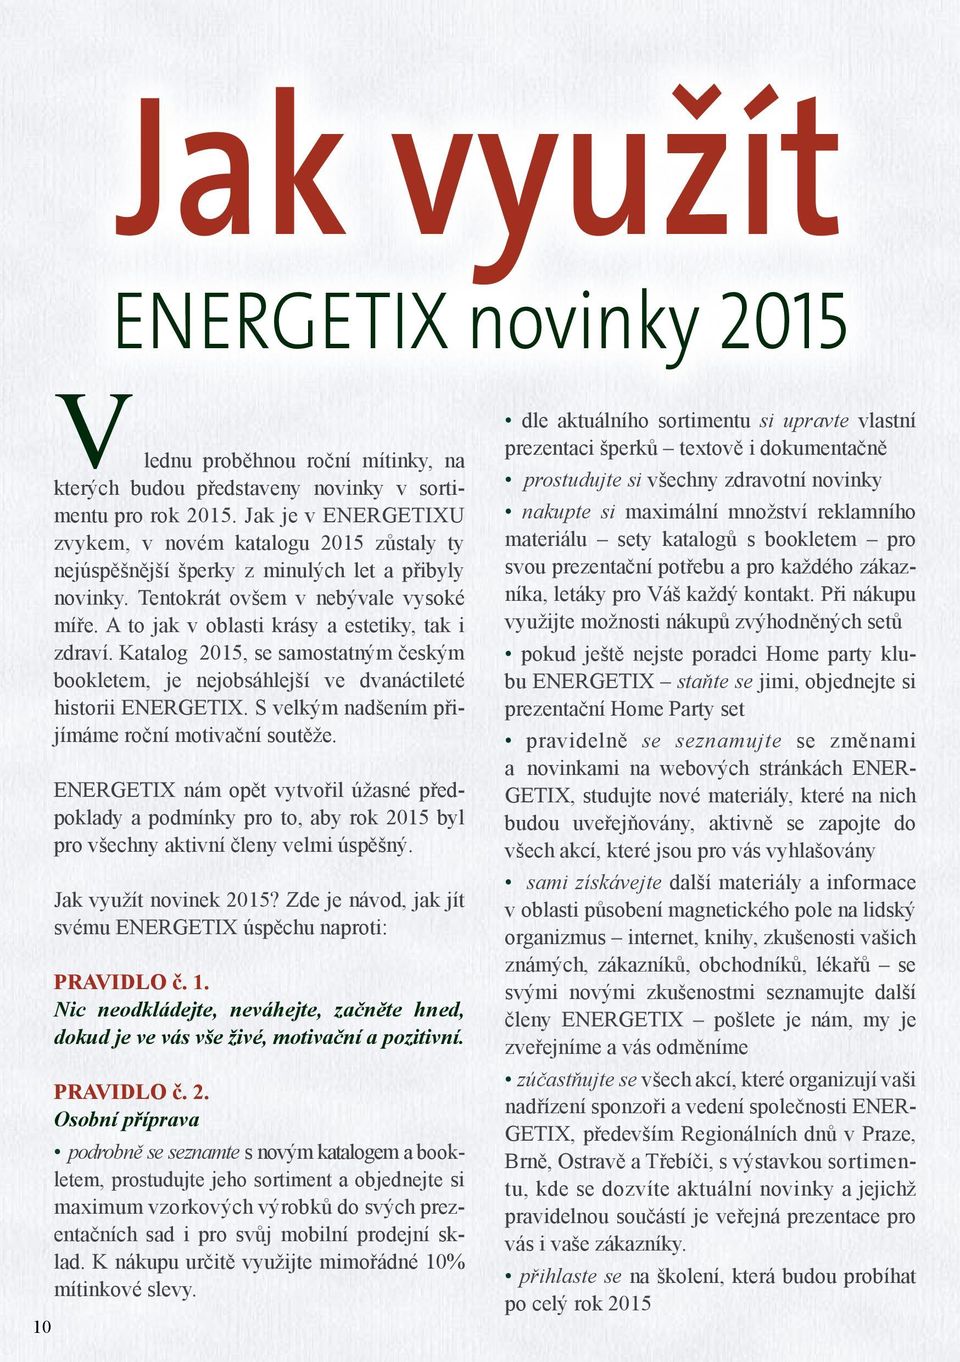 A to jak v oblasti krásy a estetiky, tak i zdraví. Katalog 2015, se samostatným českým bookletem, je nejobsáhlejší ve dvanáctileté historii ENERGETIX.